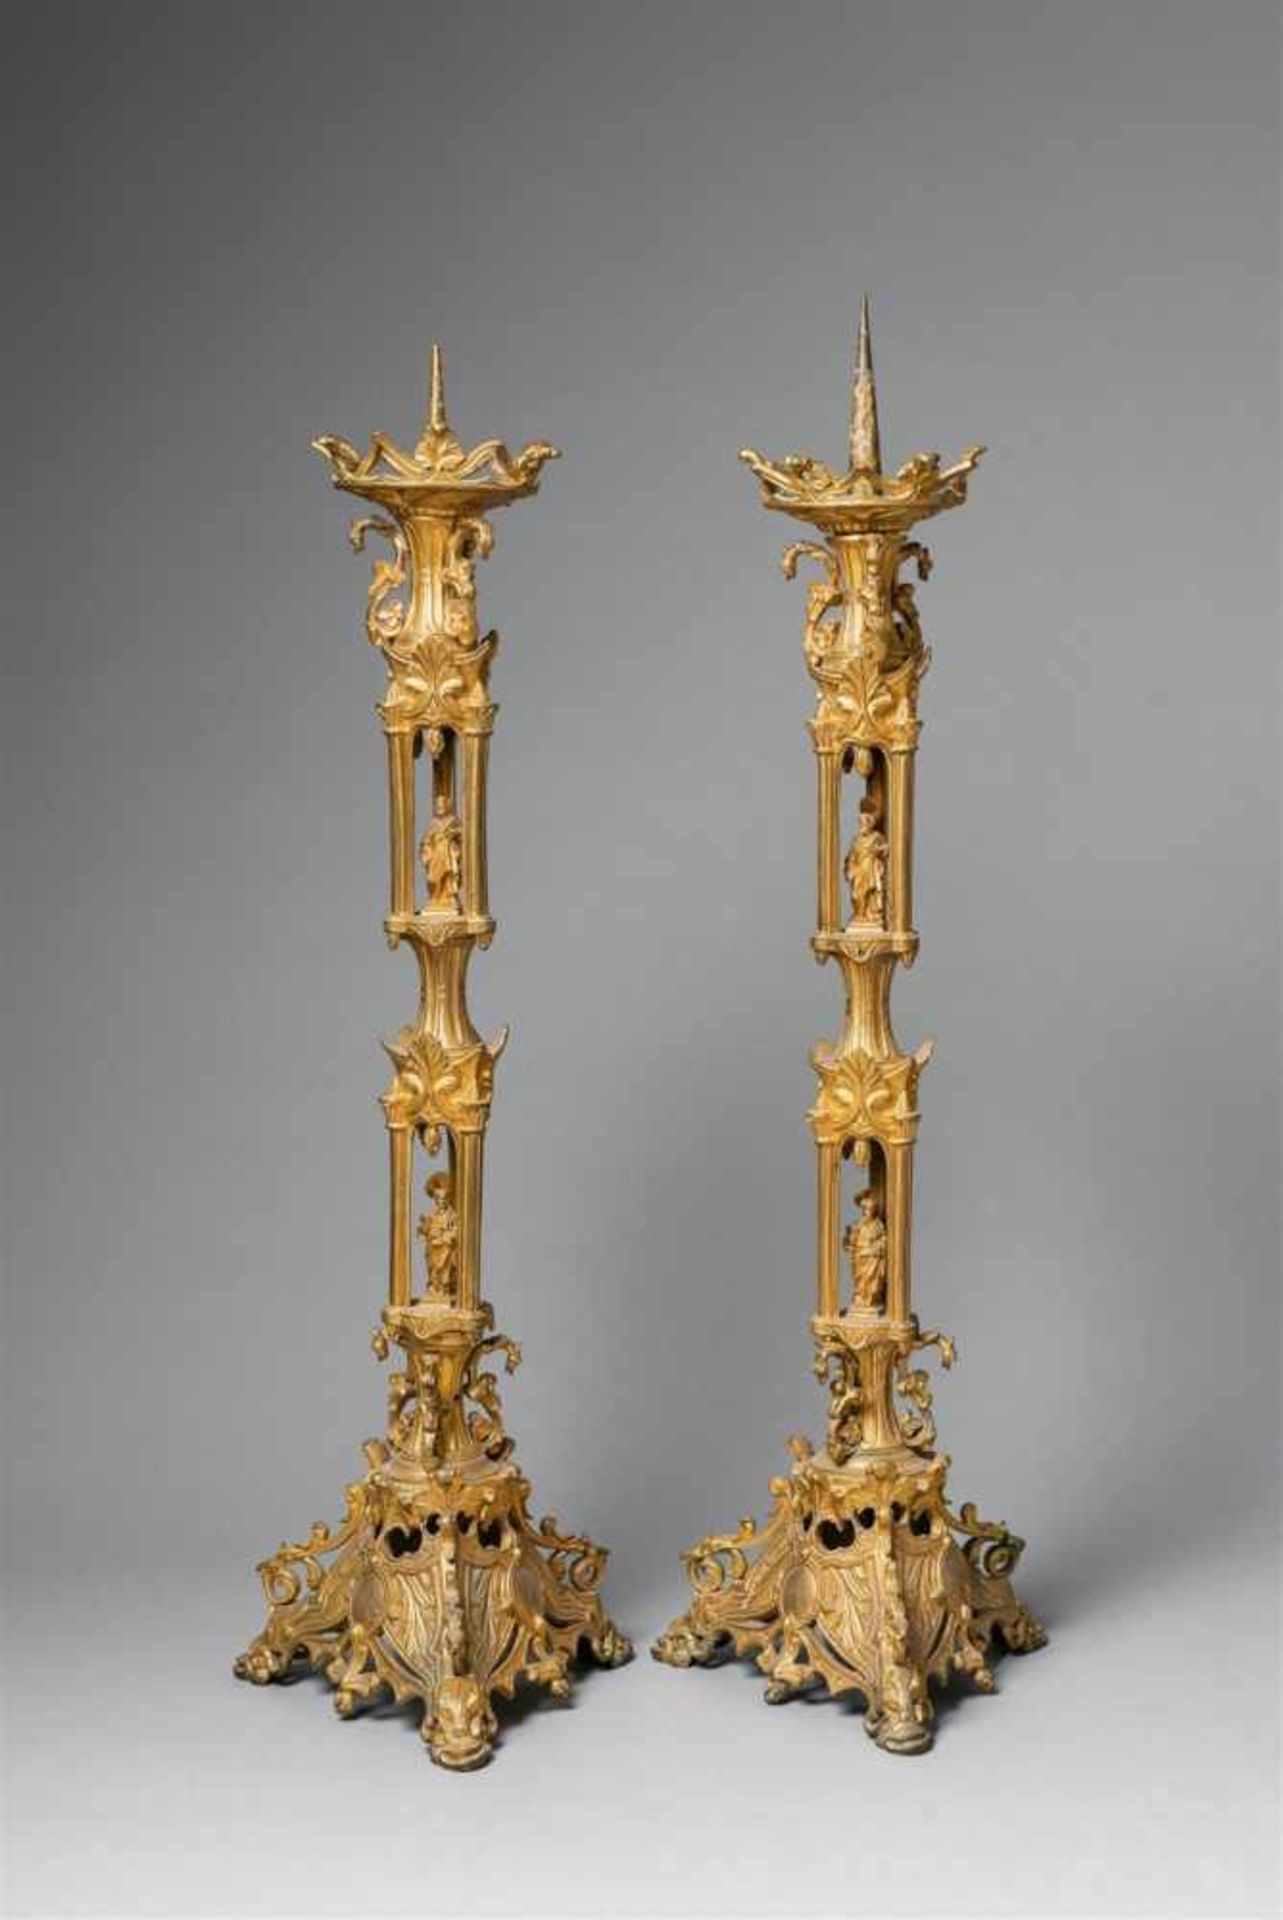 Paar neogotische AltarleuchterBronze und Messing, vergoldet. Aus mehreren Teilen gegossene und